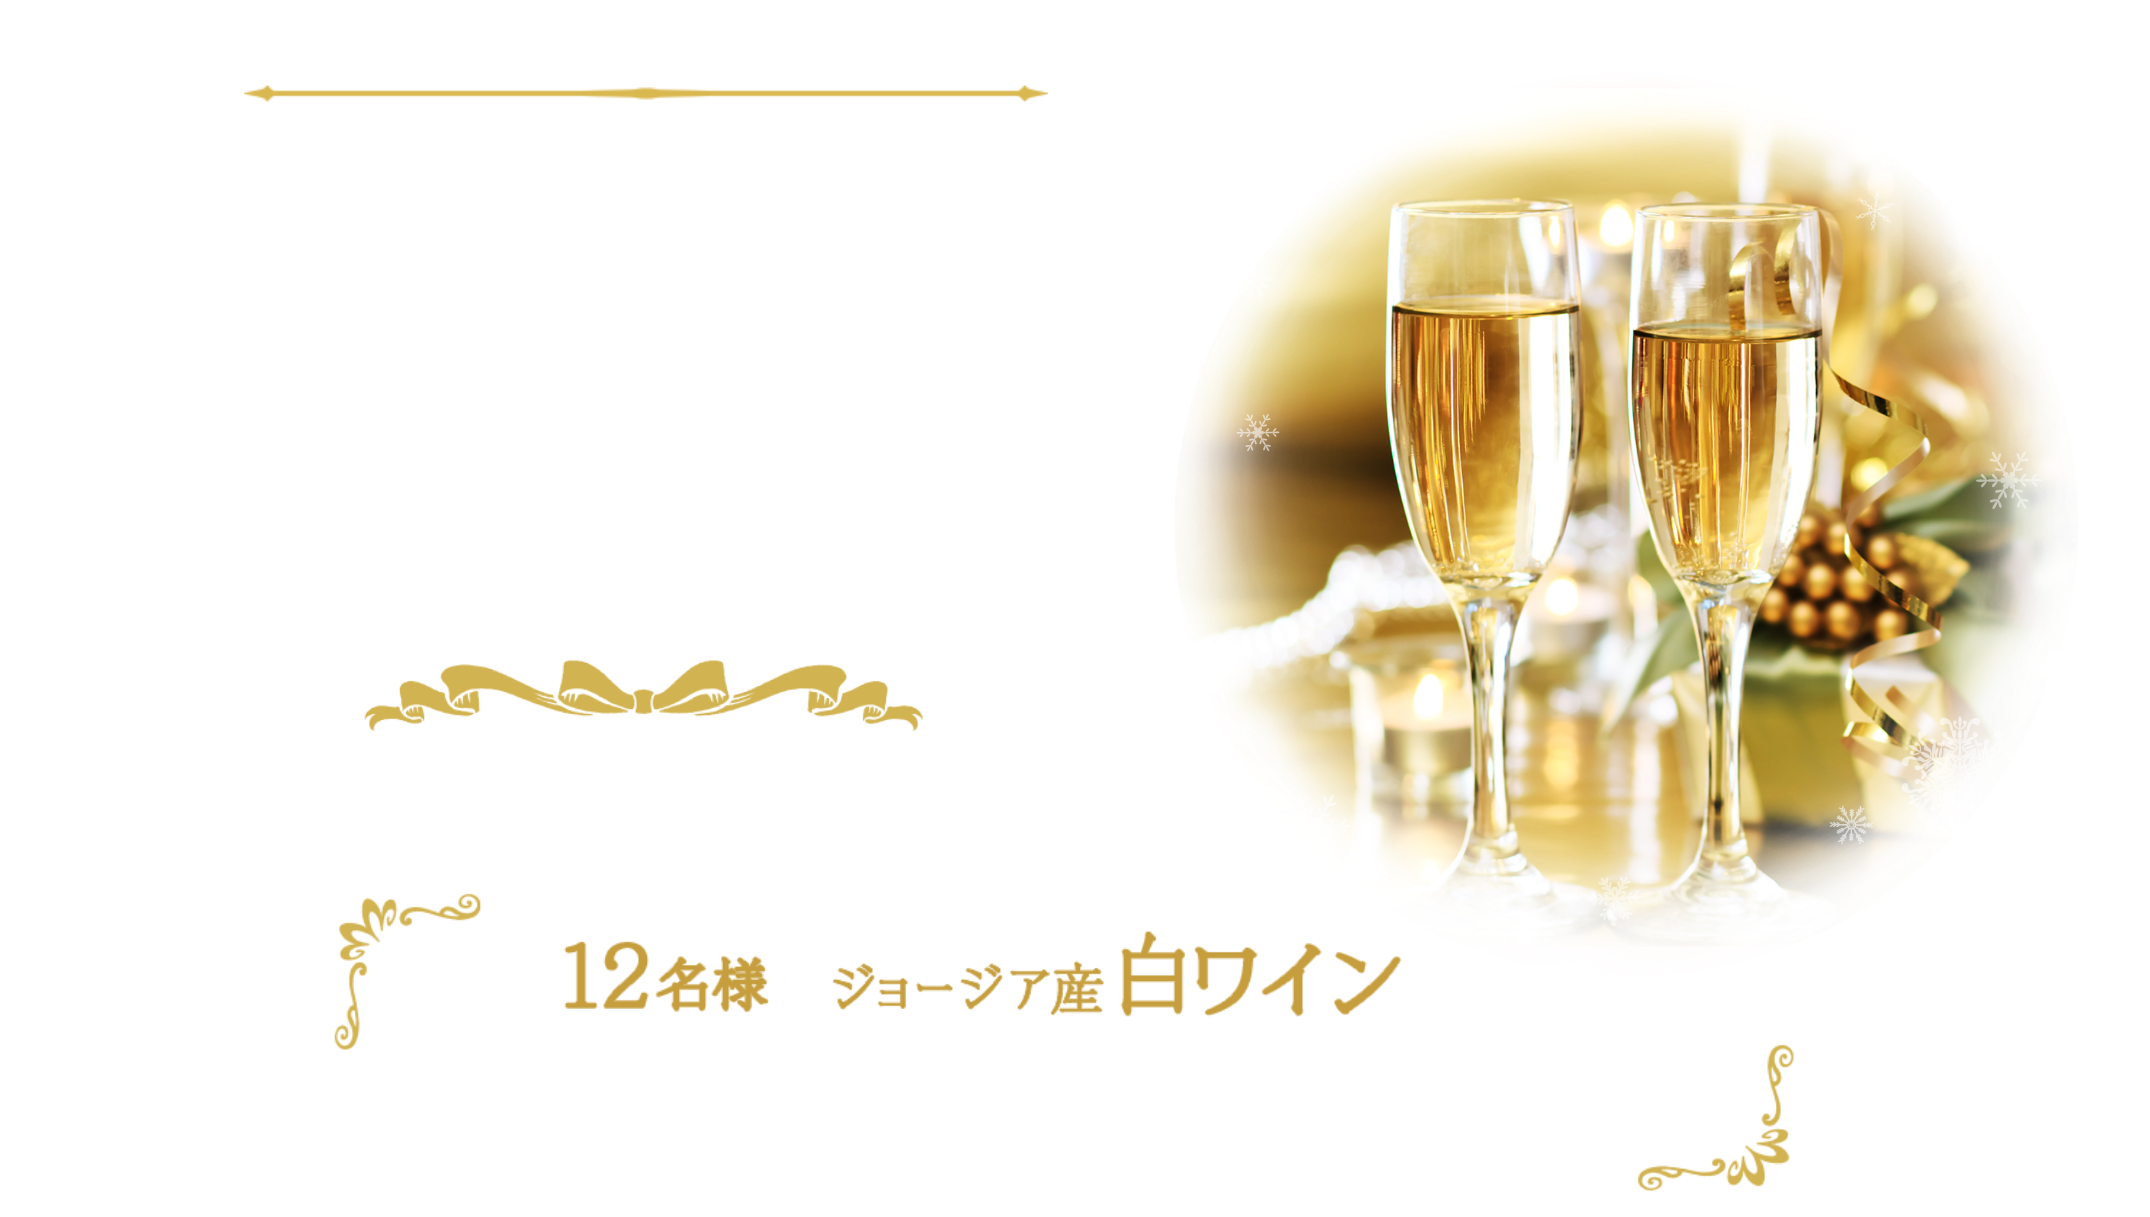 スペシャルなワインでプレミアムな時間を♪ワインプレゼントキャンペーン 2021.11.15(月)~2021.12.12(日)